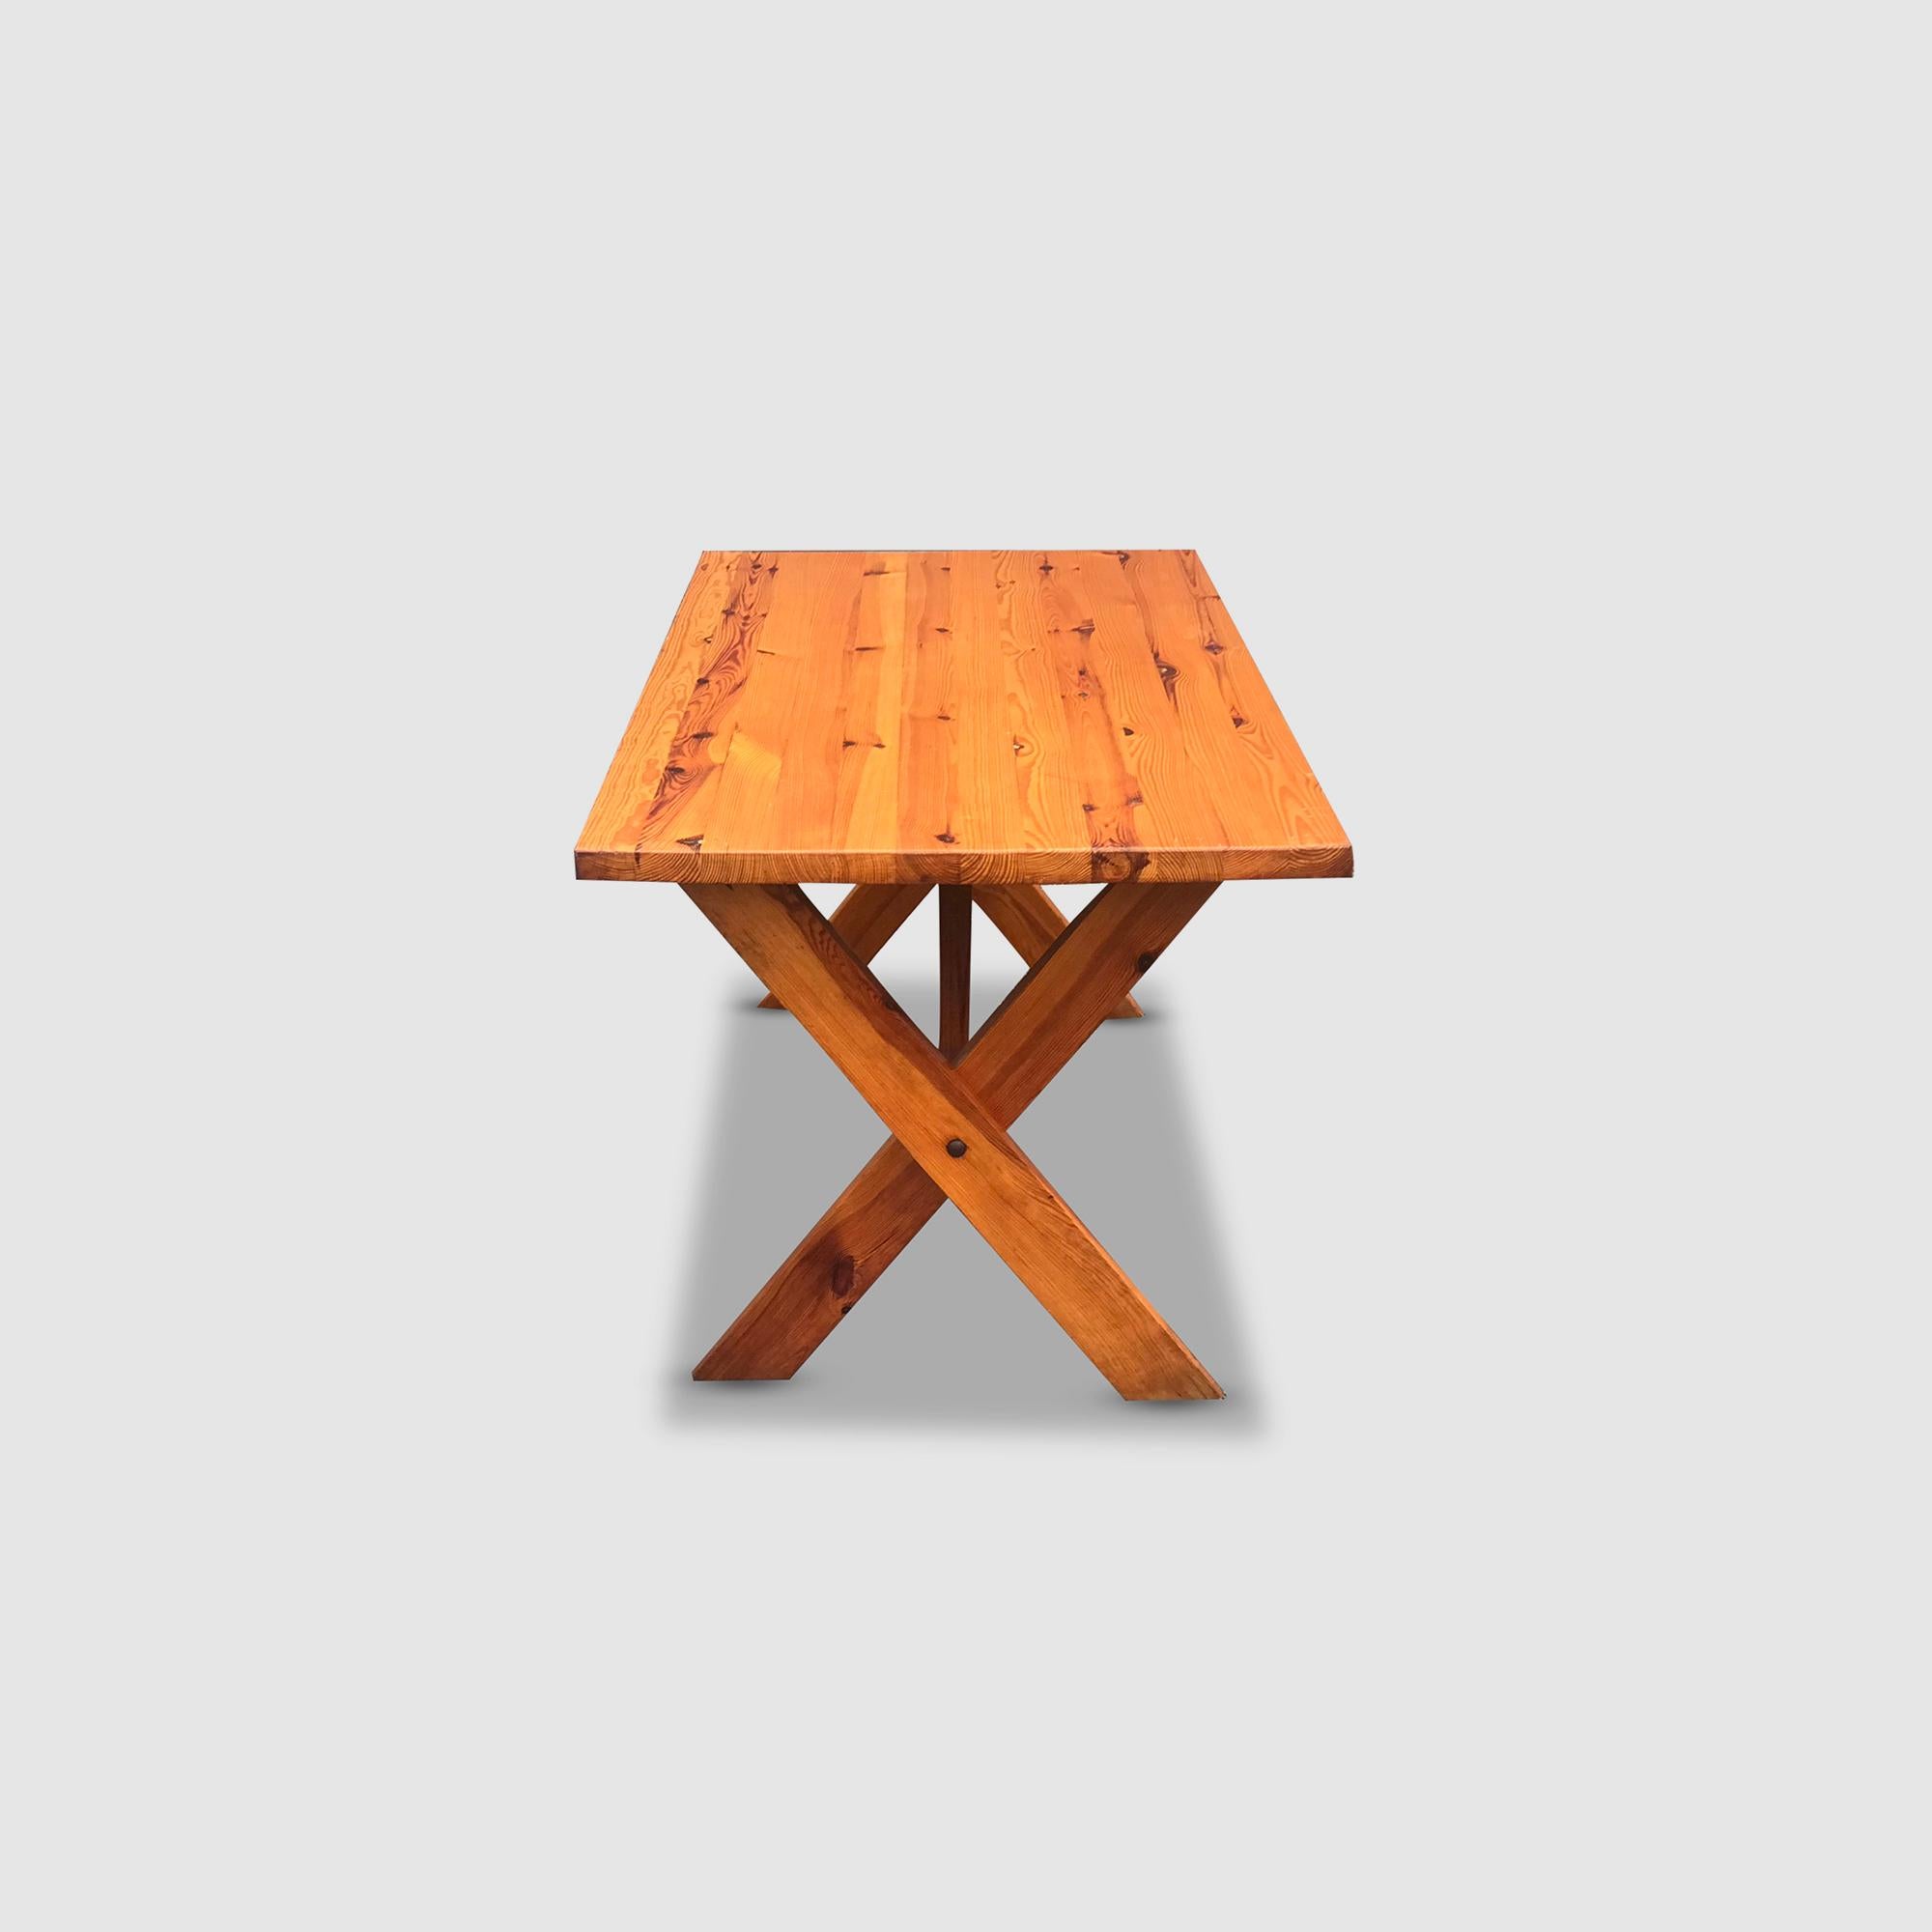 Modernist X-leg dining table by Ate van Apeldoorn for Houtwerk Hattem 1970s For Sale 3